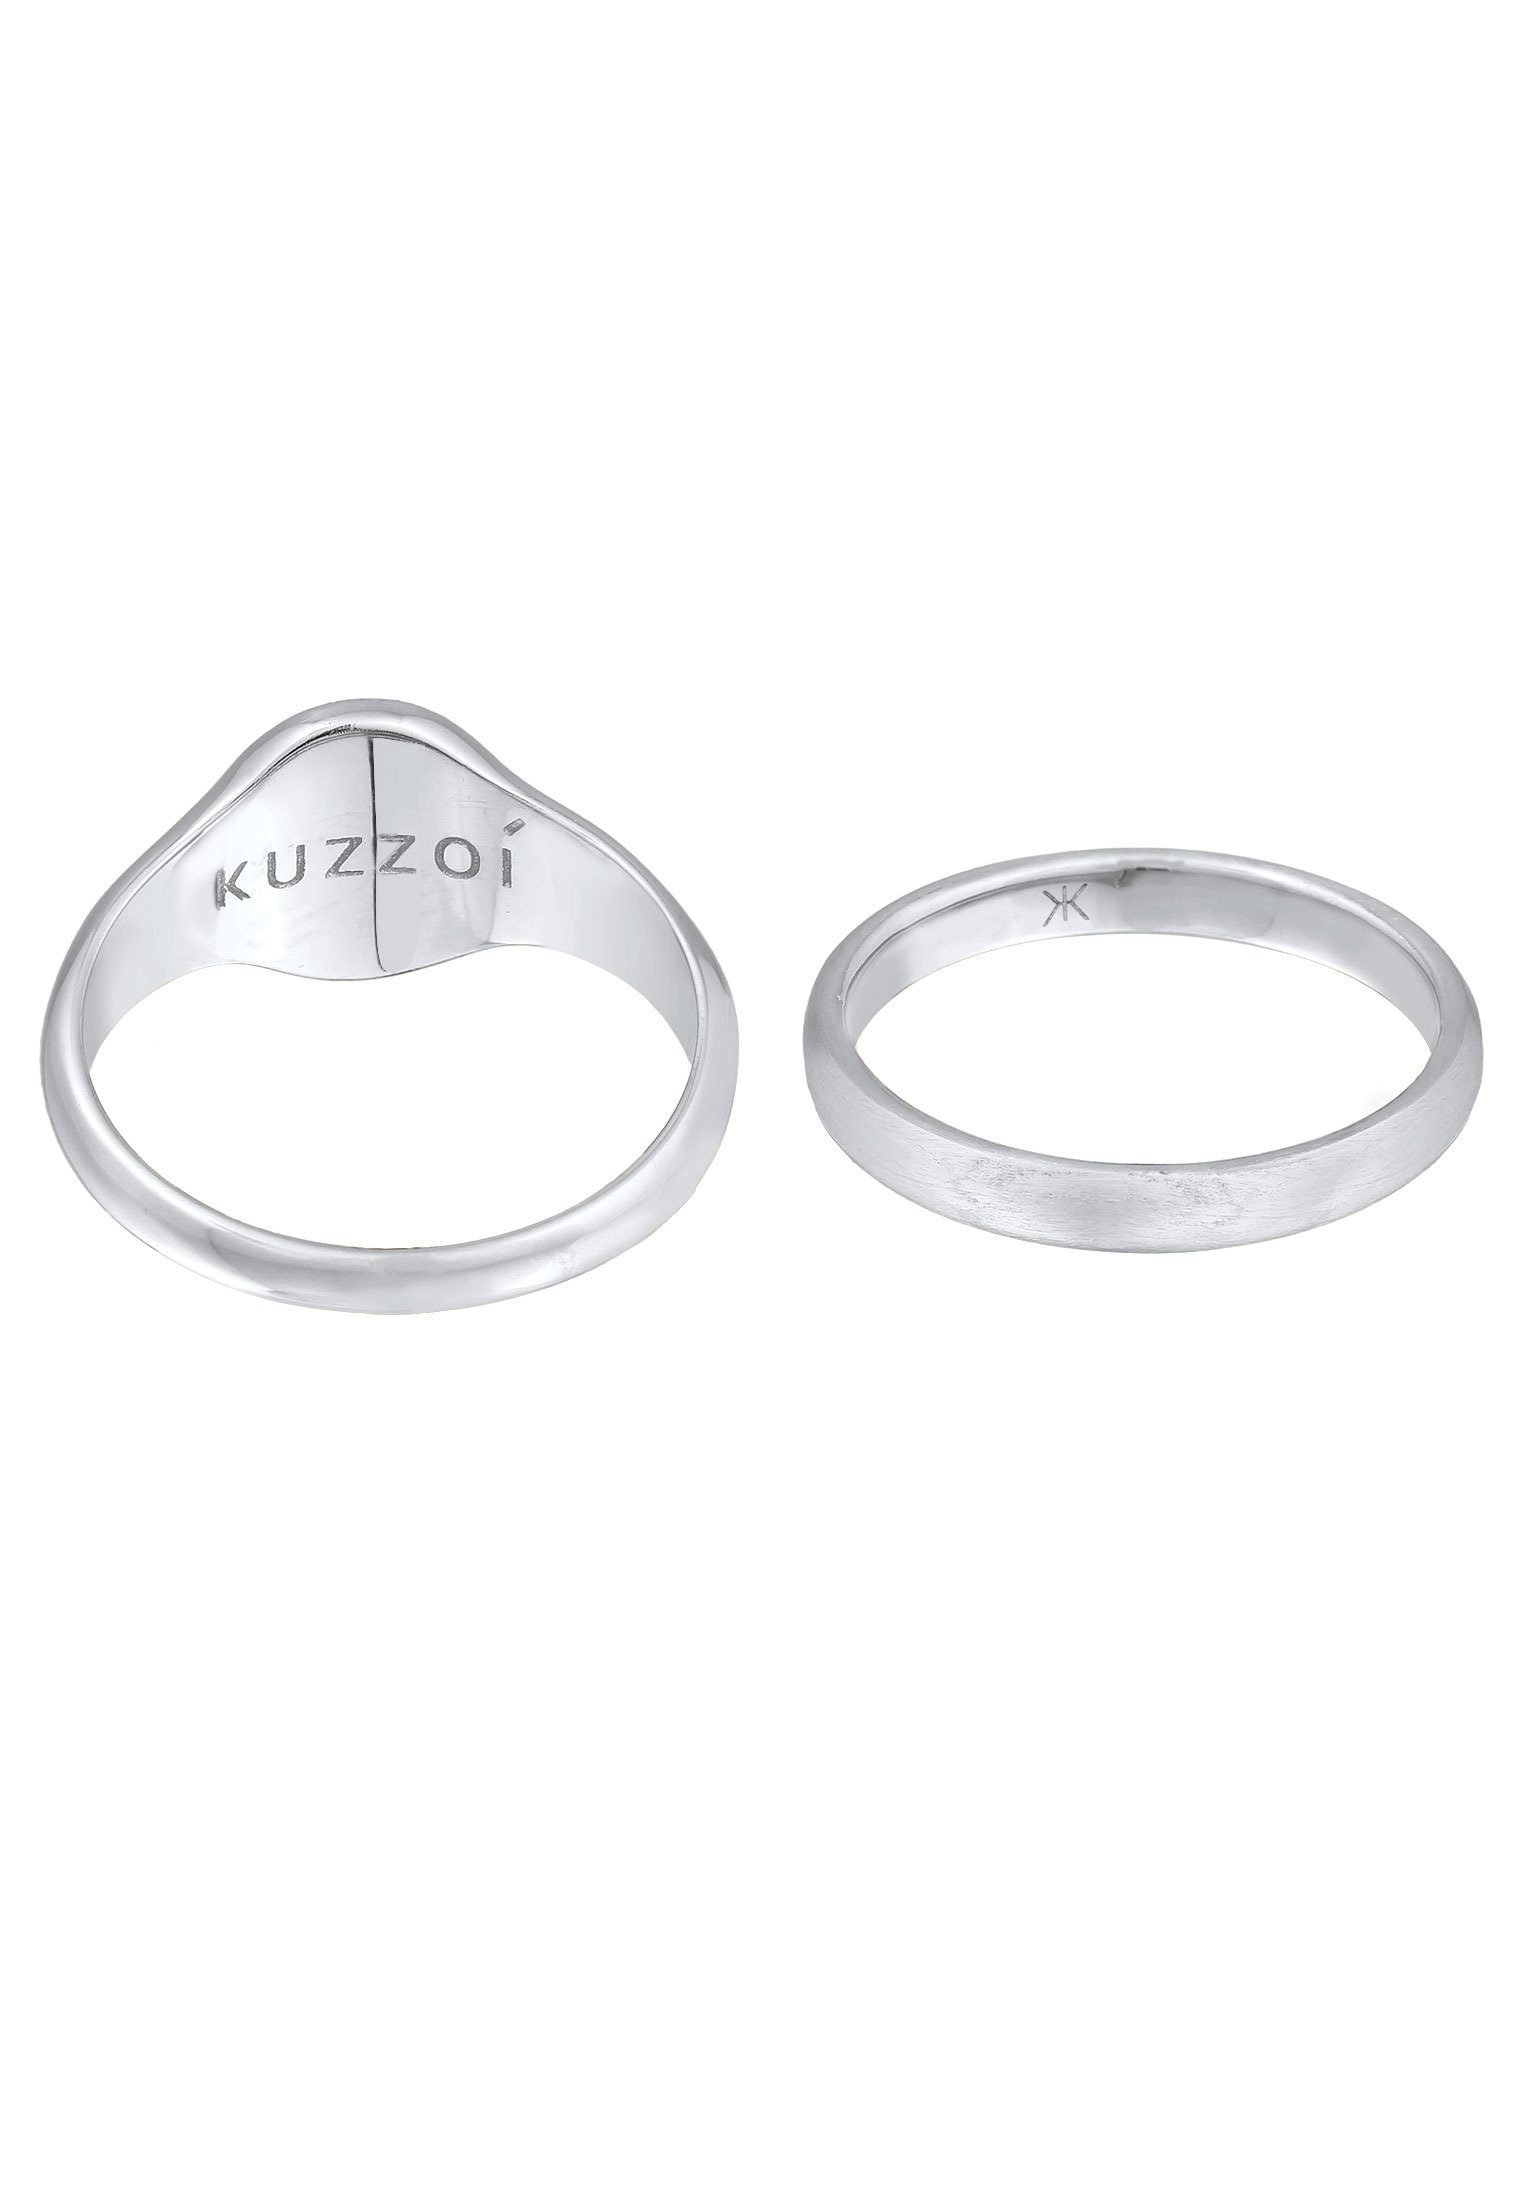 Offizieller Online-Shop Kuzzoi Siegelring Herren Silber 2er Set Siegelring Basic Bandring 925